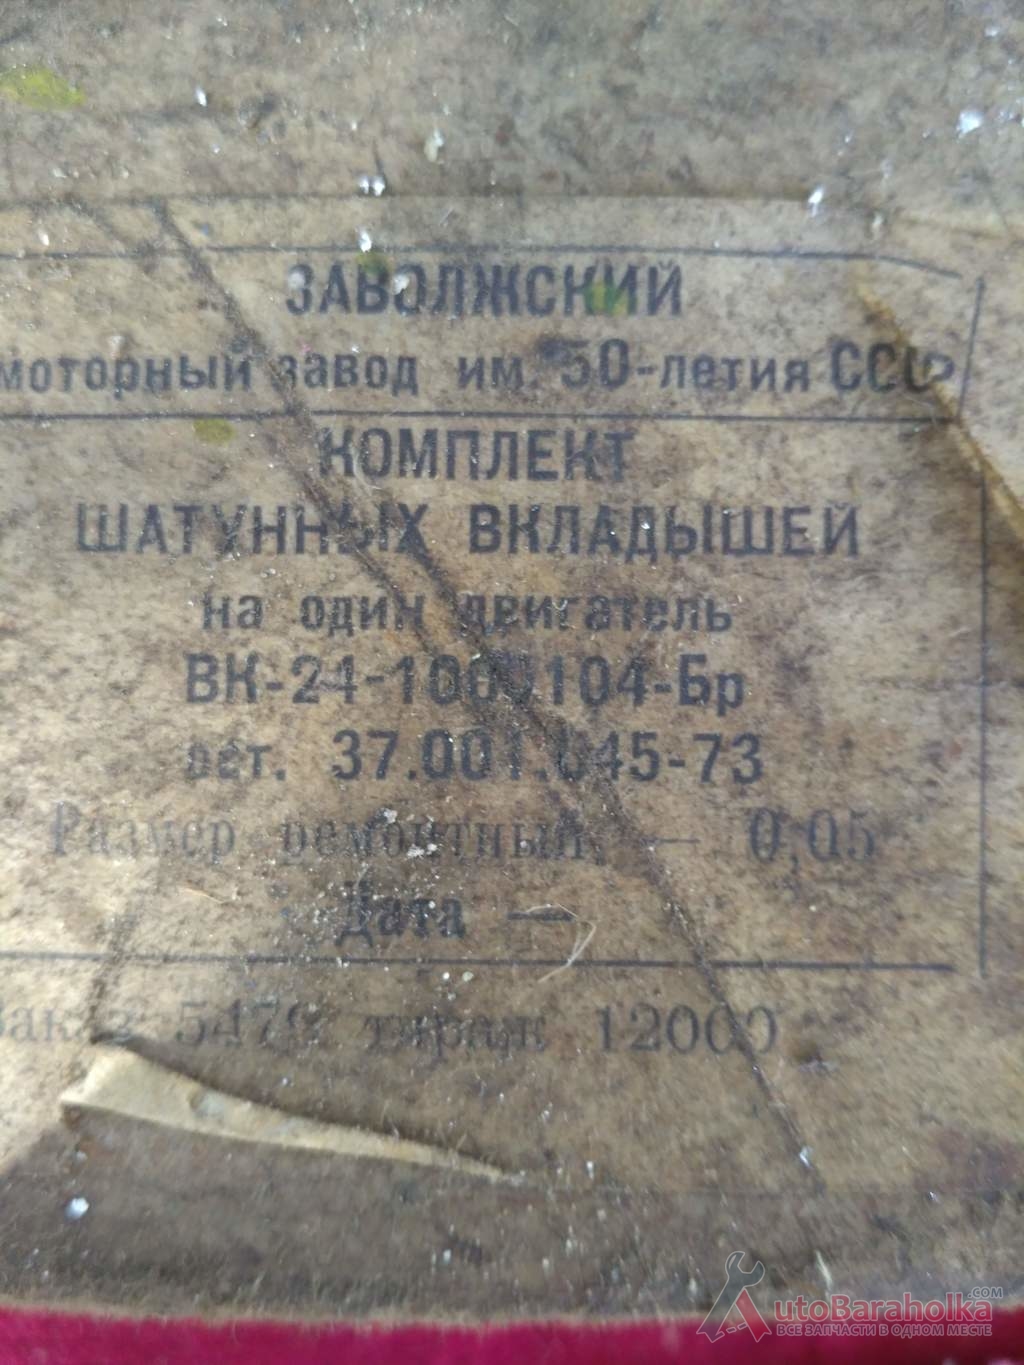 Продам Комплект шатунных вкладышей ГАЗ-24, размер 0.05 Краматорск